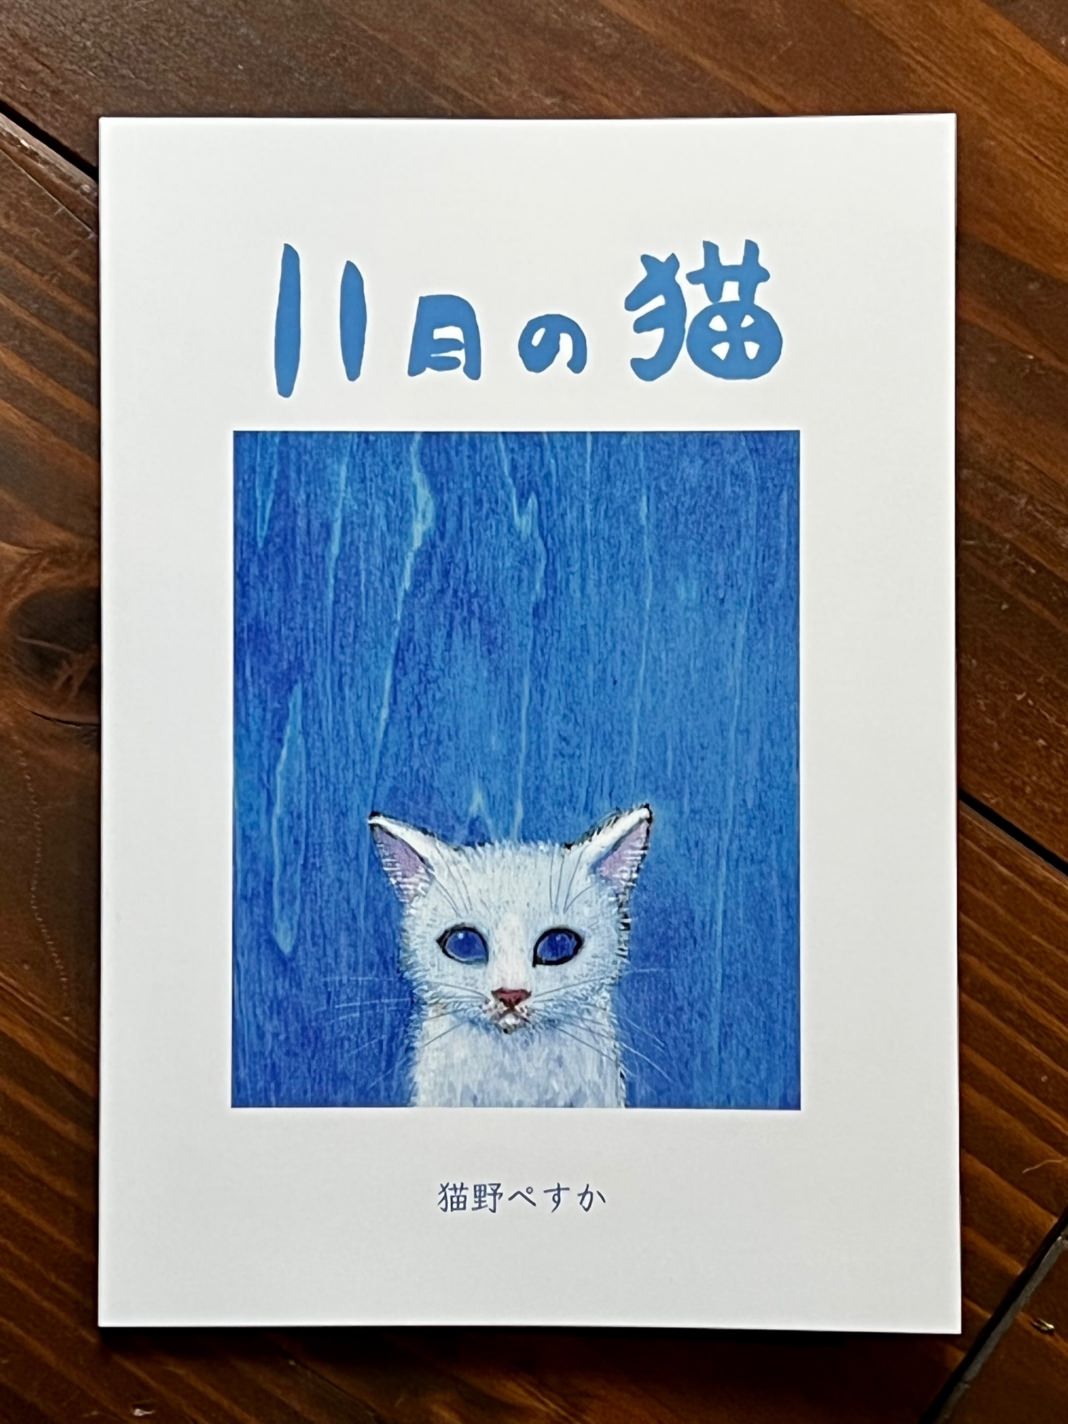 再々入荷サイン入り11月の猫  猫本専門書店 書肆 吾輩堂